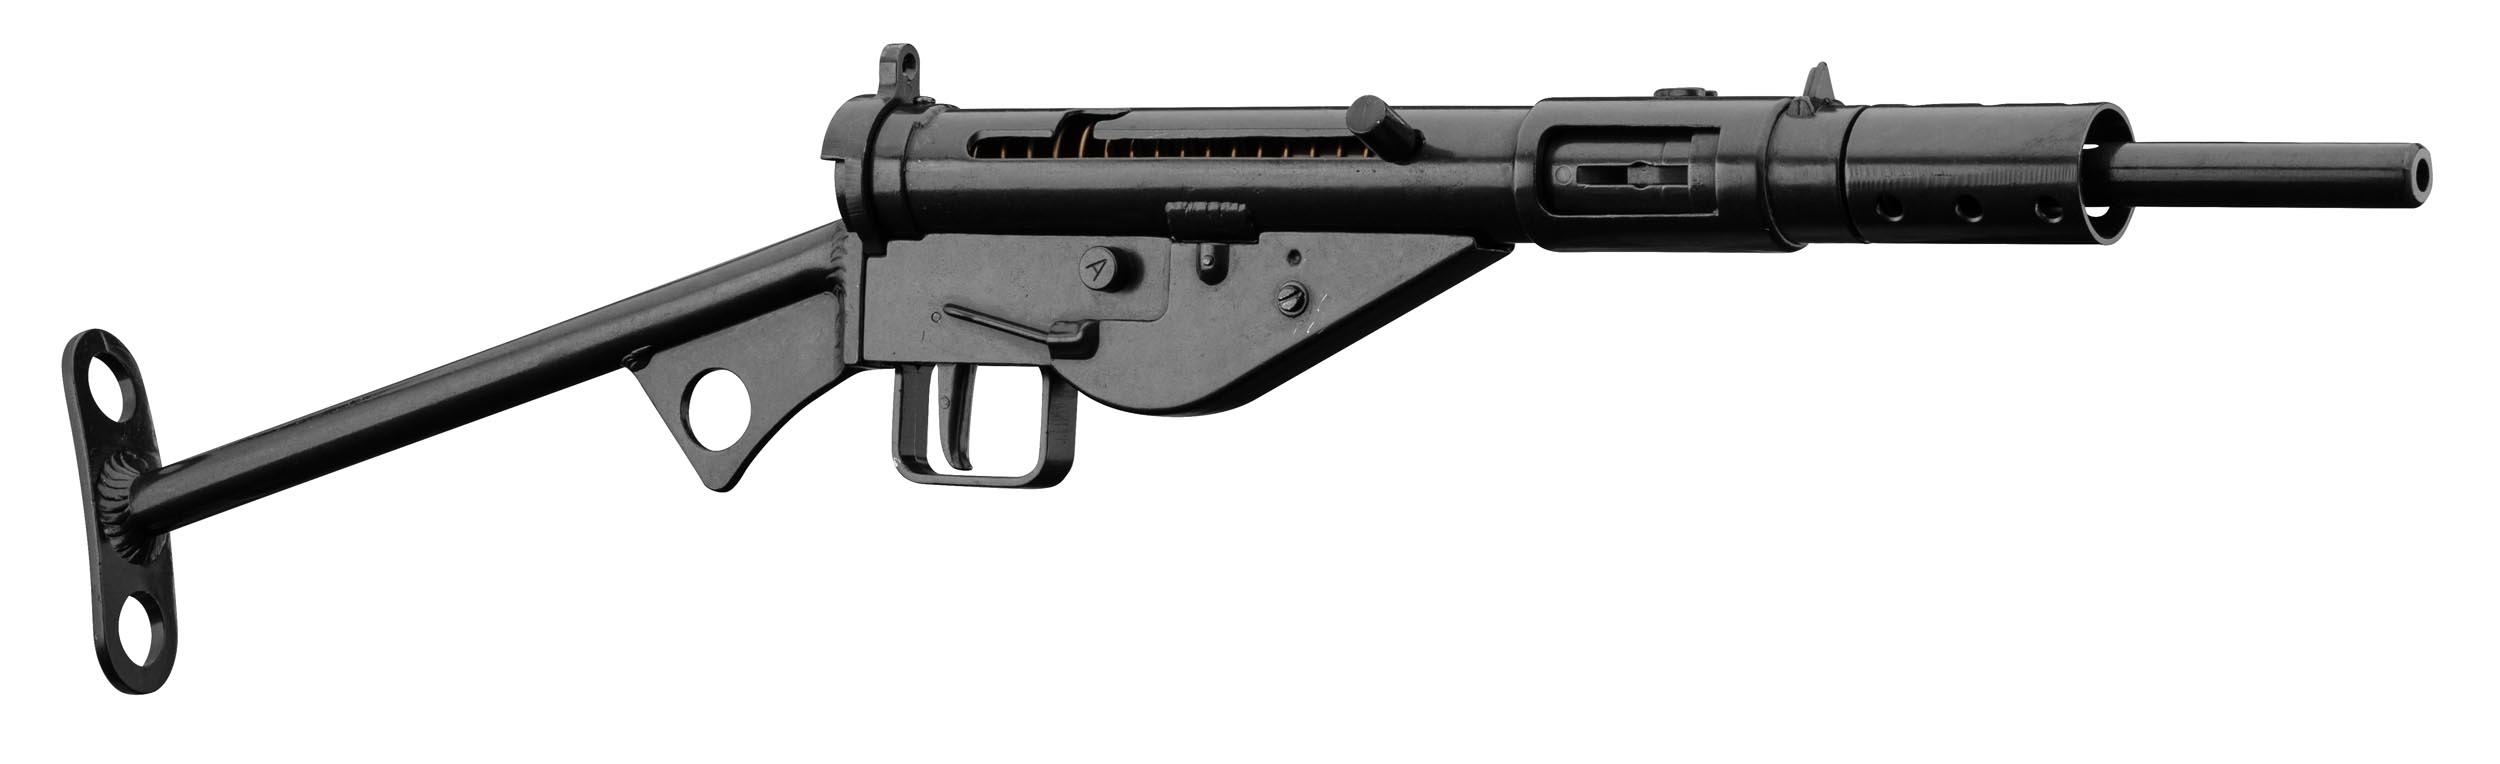 Réplique pistolet MK II CO2 FULL METAL - Tir de loisir/Réplique